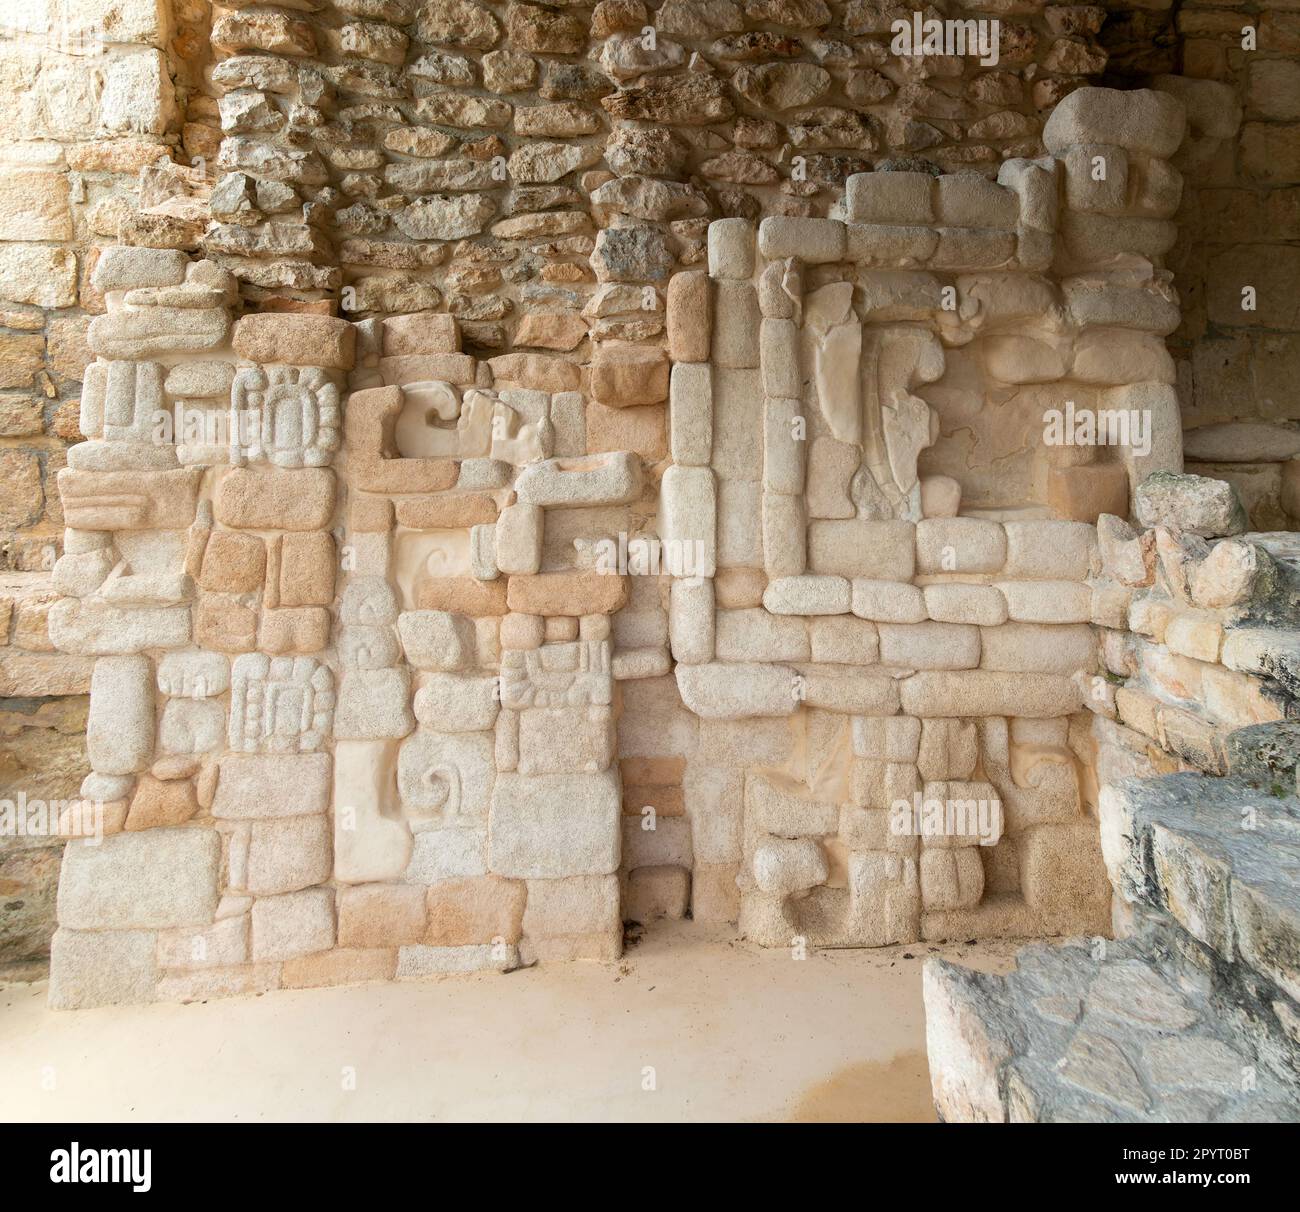 Kunstvolle Steinschnitzereien an der Ausgrabungsstätte der Maya, Ek Balam, in der Nähe von Vallodoid, Temozón, Yucatán, Mexiko Stockfoto